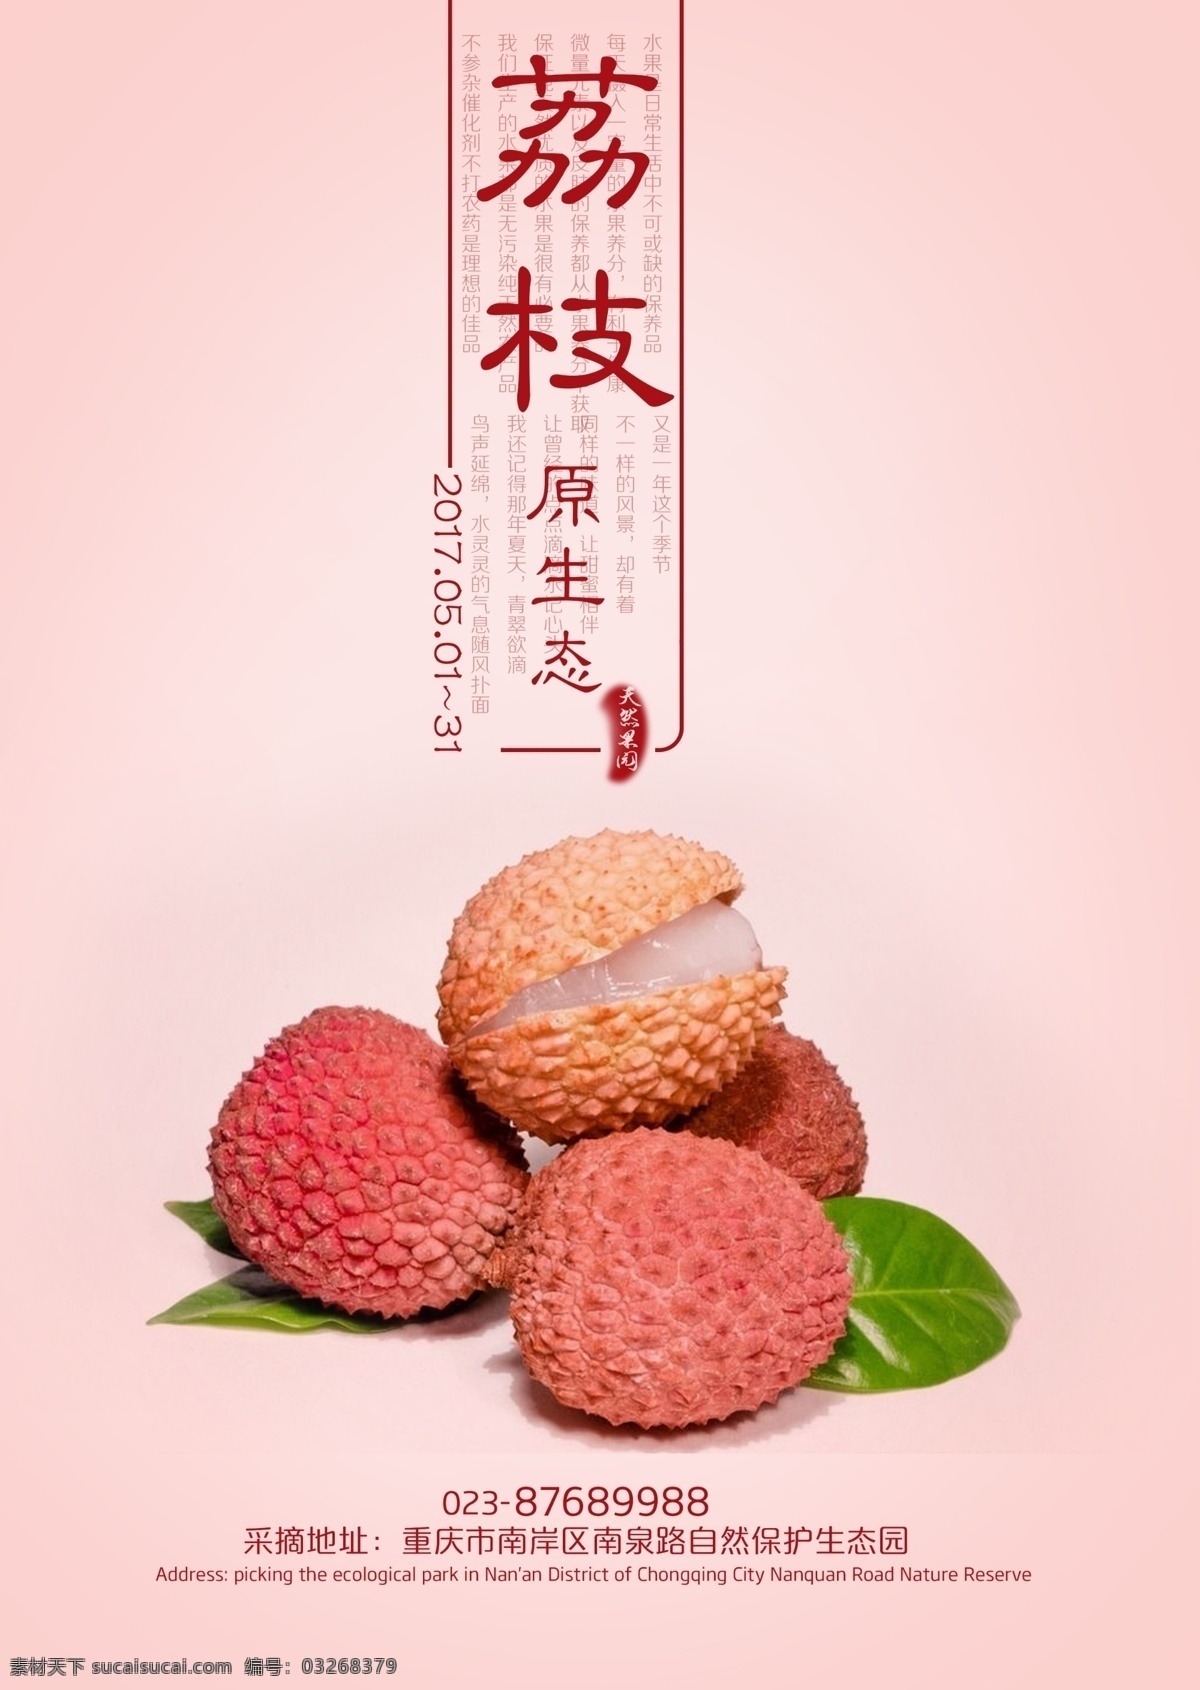 荔枝 天然水果 水果 粉色底图 纯天然 绿色食品 采摘 门店广告